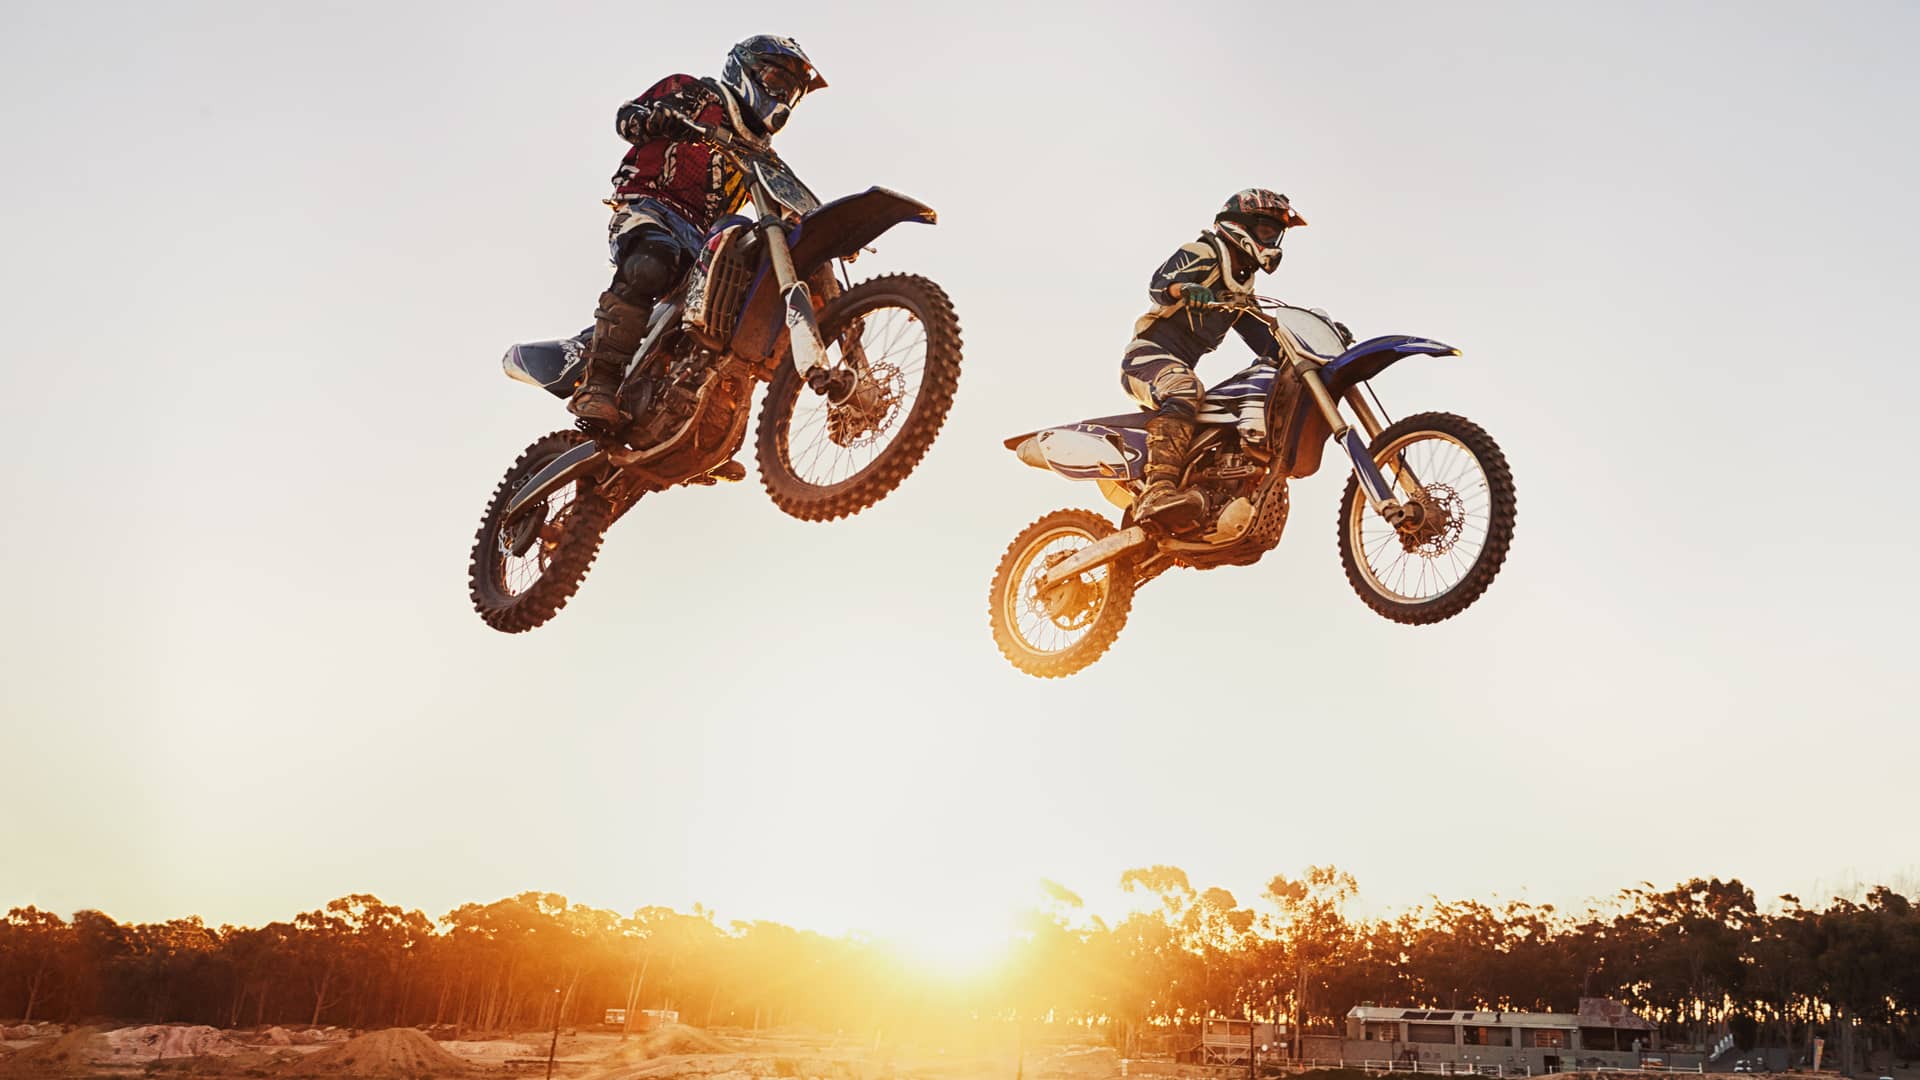 Motos saltando en competición simboliza dazn